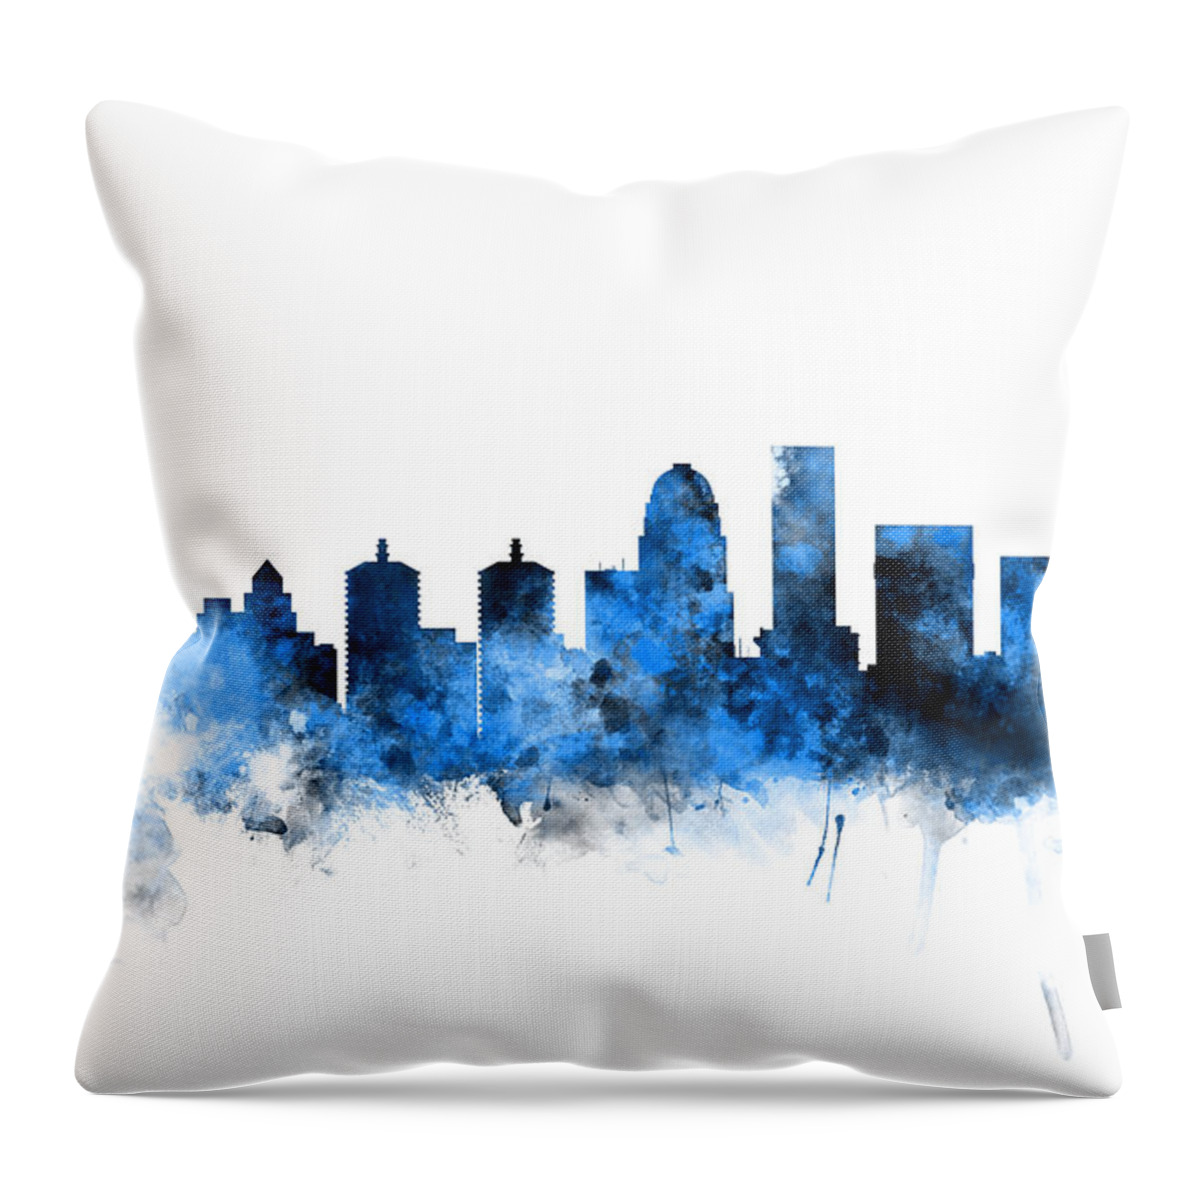 Watercolour Throw Pillow featuring the digital art Louisville Kentucky City Skyline by Michael Tompsett